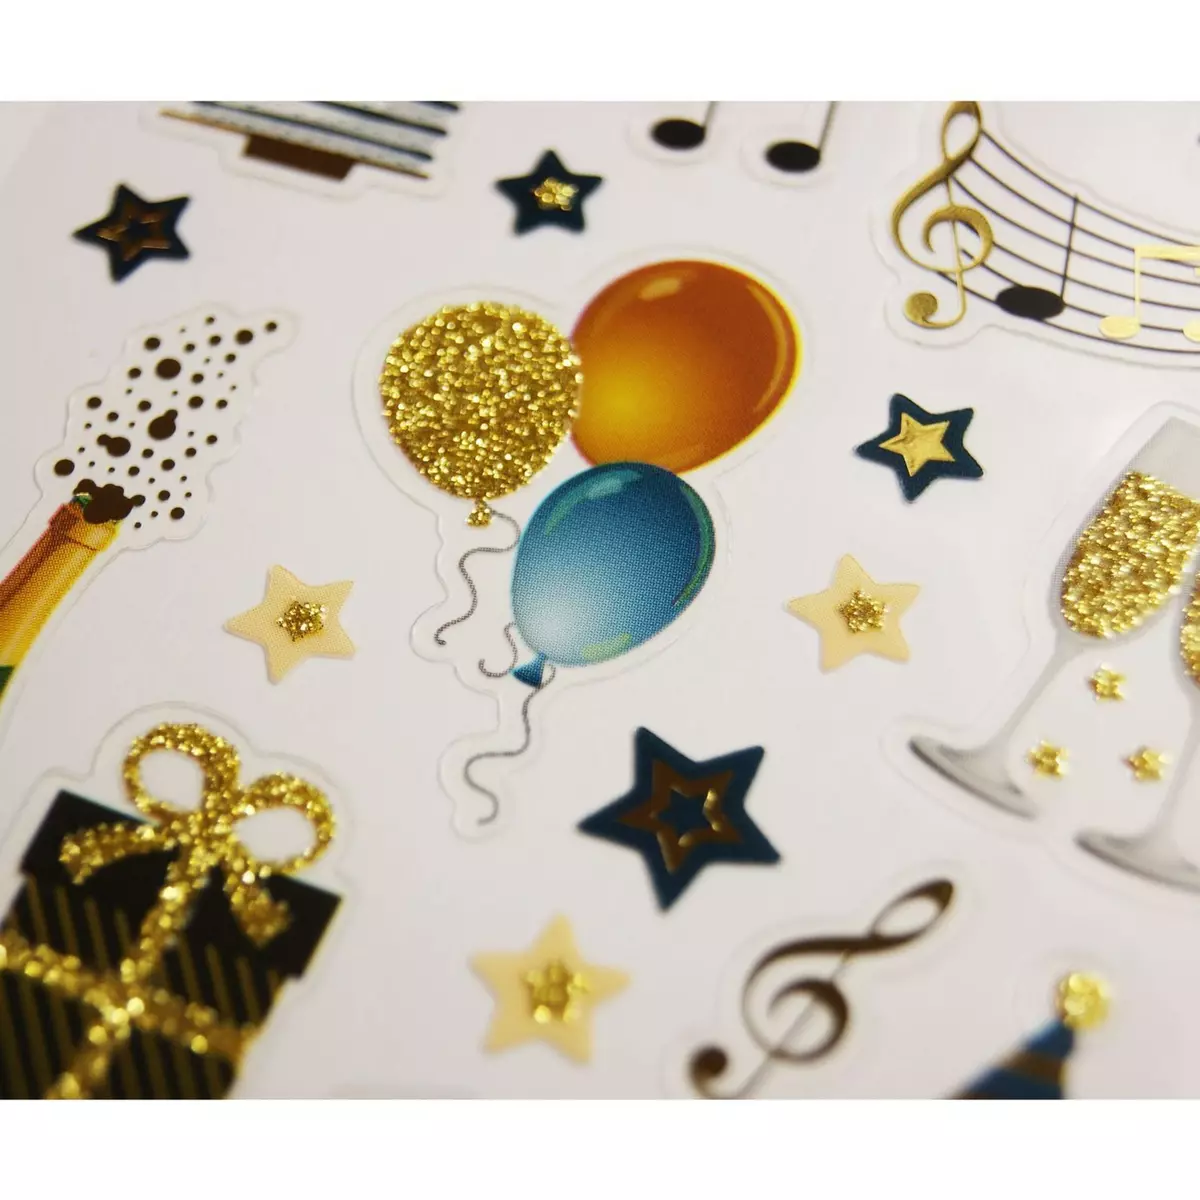  Stickers - Fête d'anniversaire - Paillettes - 1,8 cm